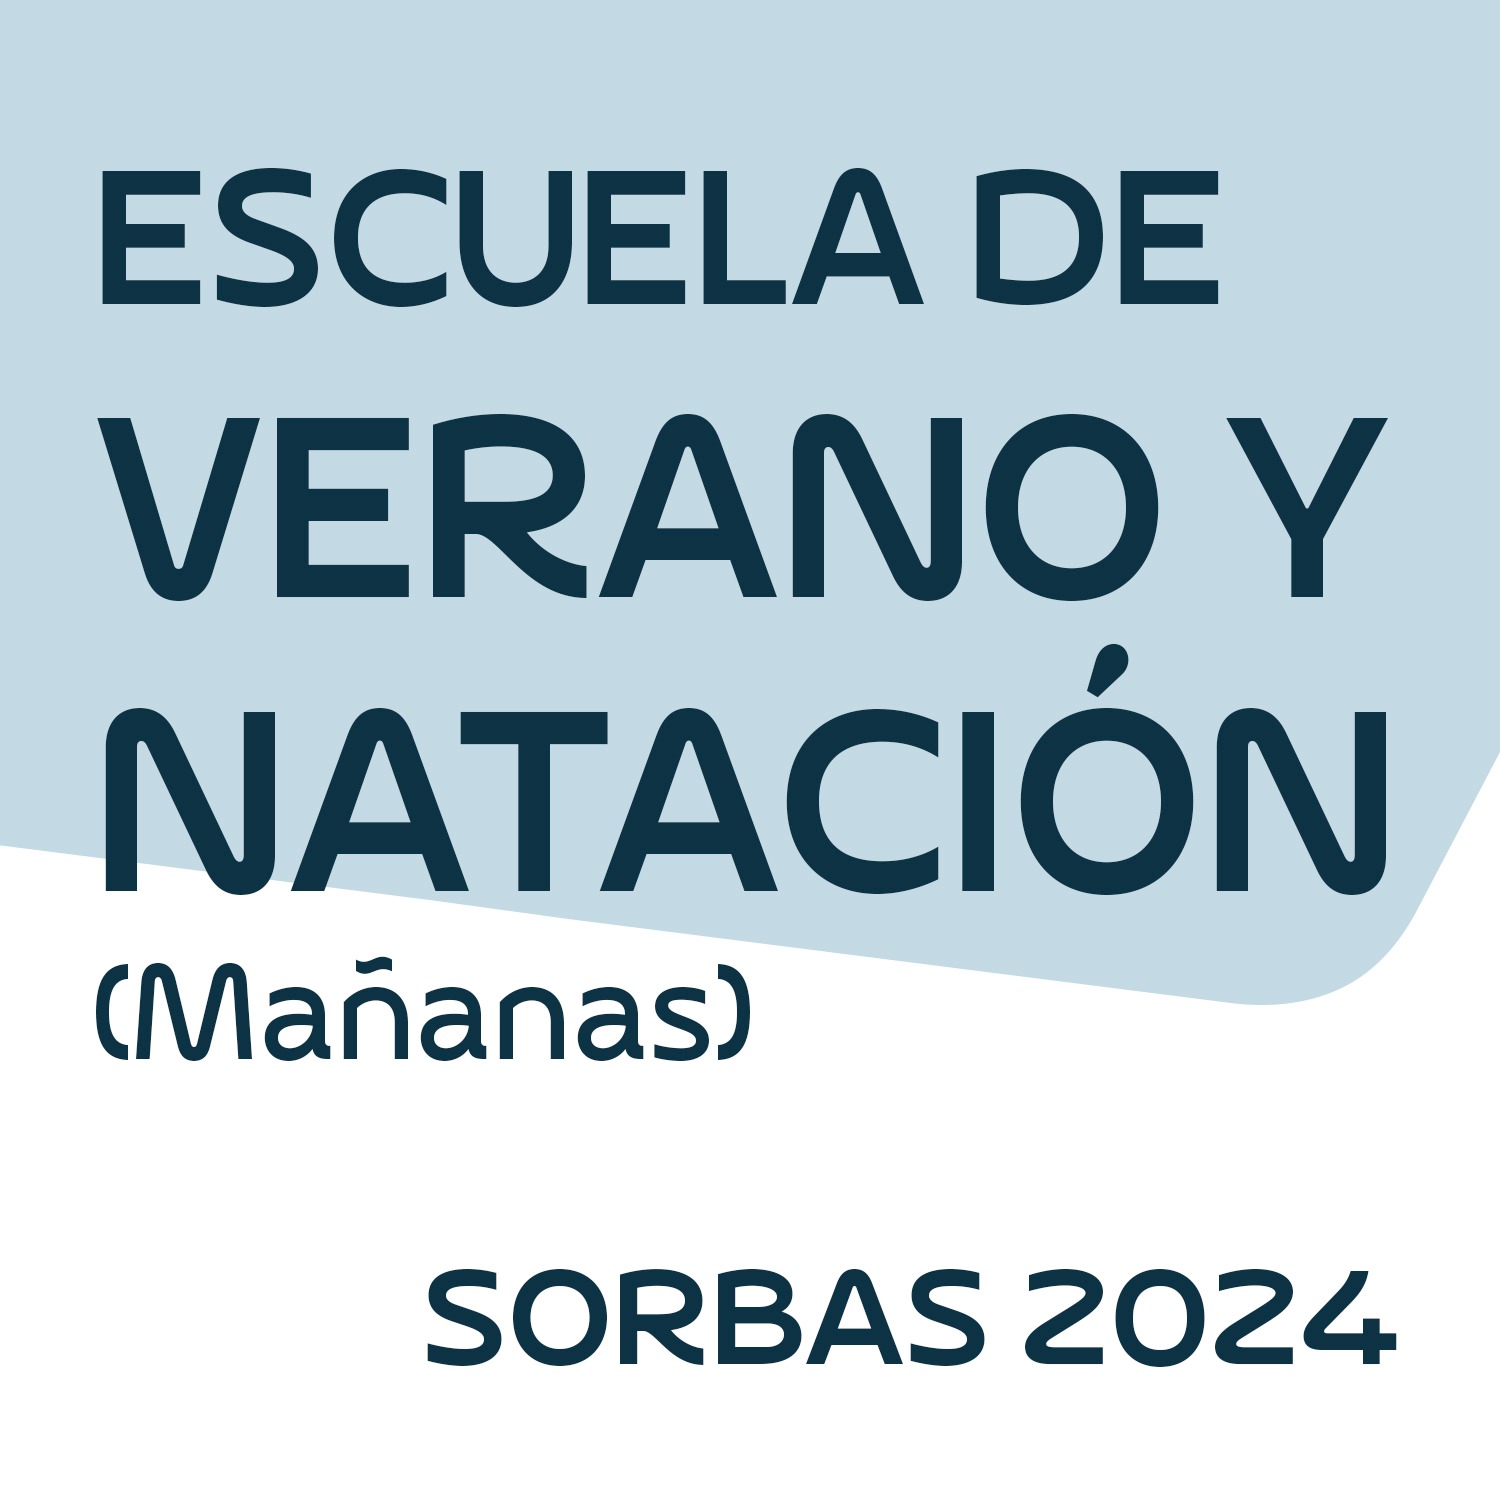 ESCUELA DE VERANO Y NATACIÓN MAÑANAS SORBAS 2024